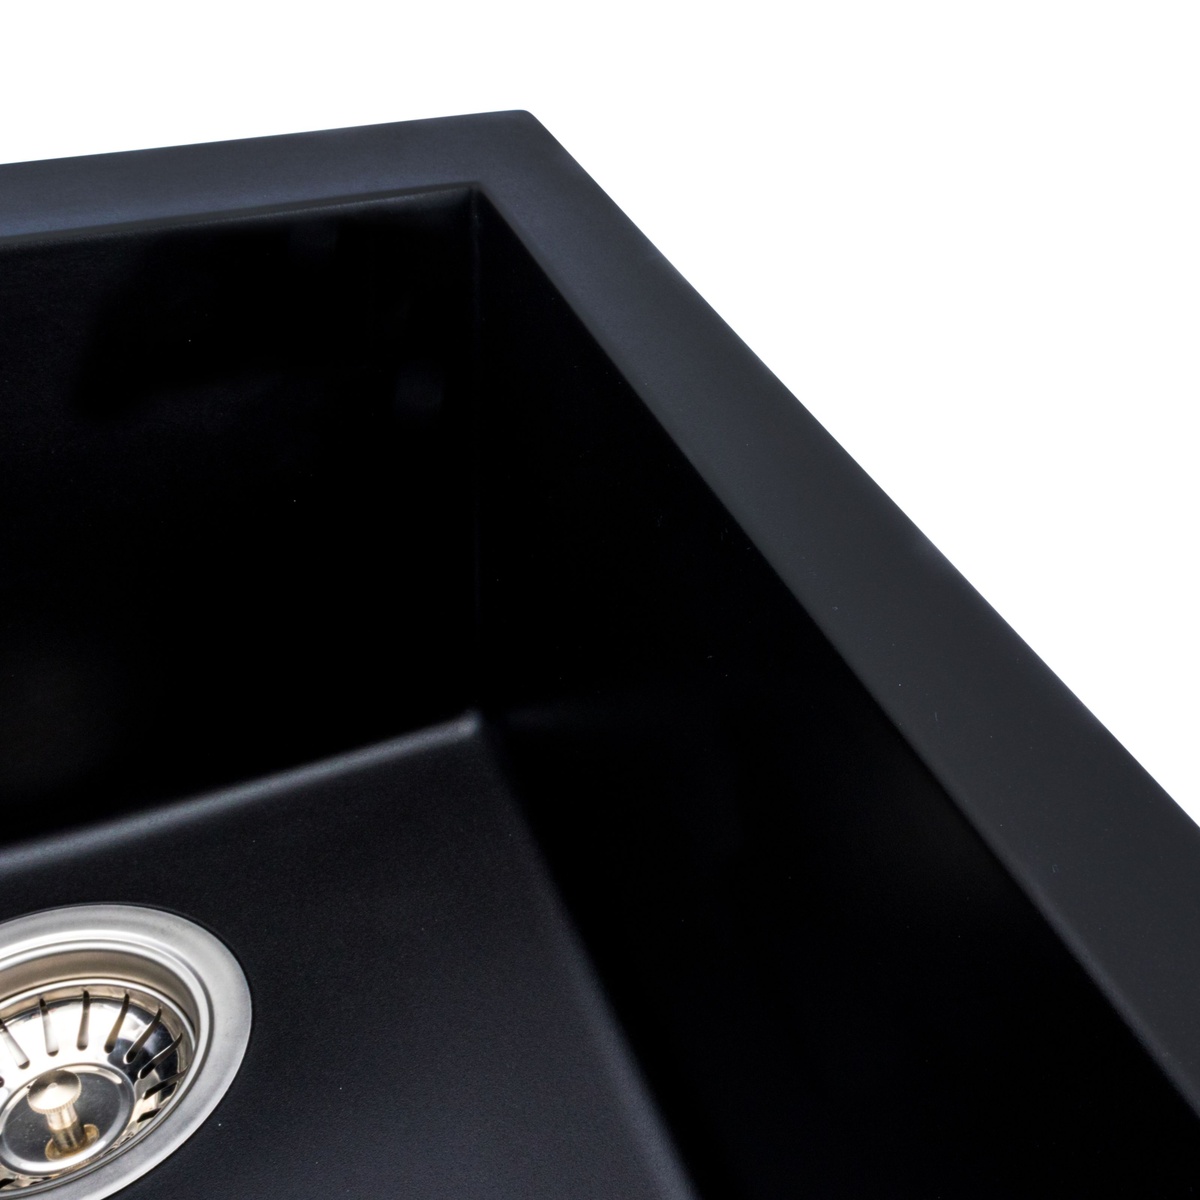 Мийка для кухні гранітна прямокутна PLATINUM 4150 SOKIL 500x410x220мм із сифоном чорна PLS-A38342